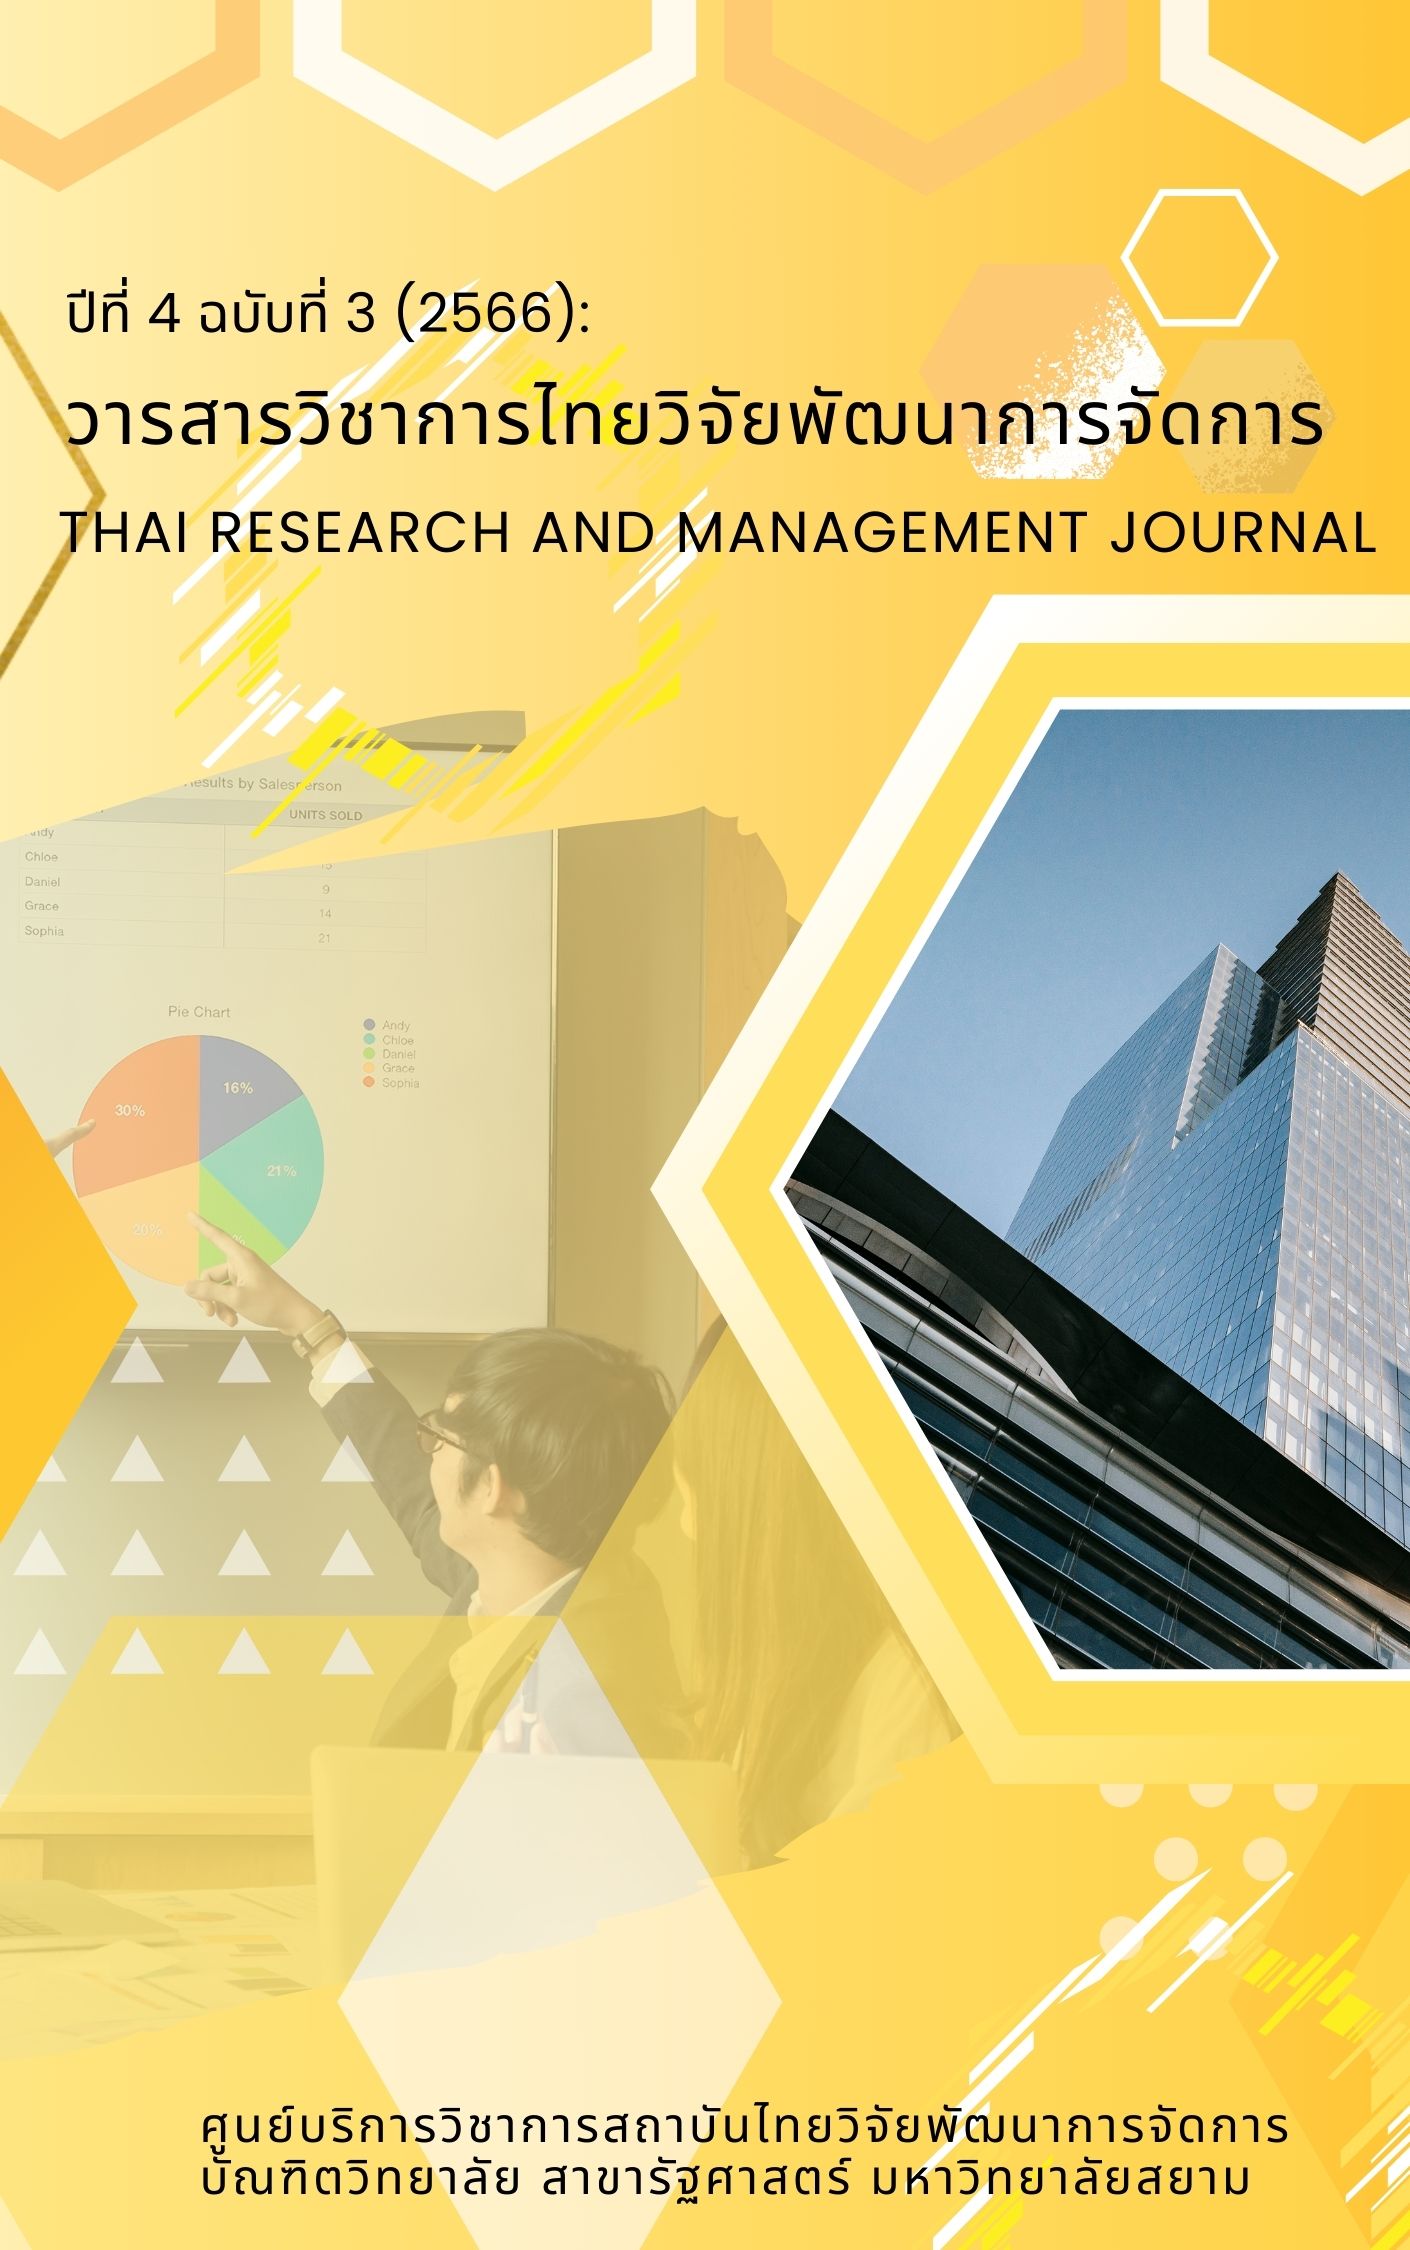 					ดู ปีที่ 4 ฉบับที่ 3 (2566): วารสารวิชาการไทยวิจัยและการจัดการ, Thai Research and Management Journal
				